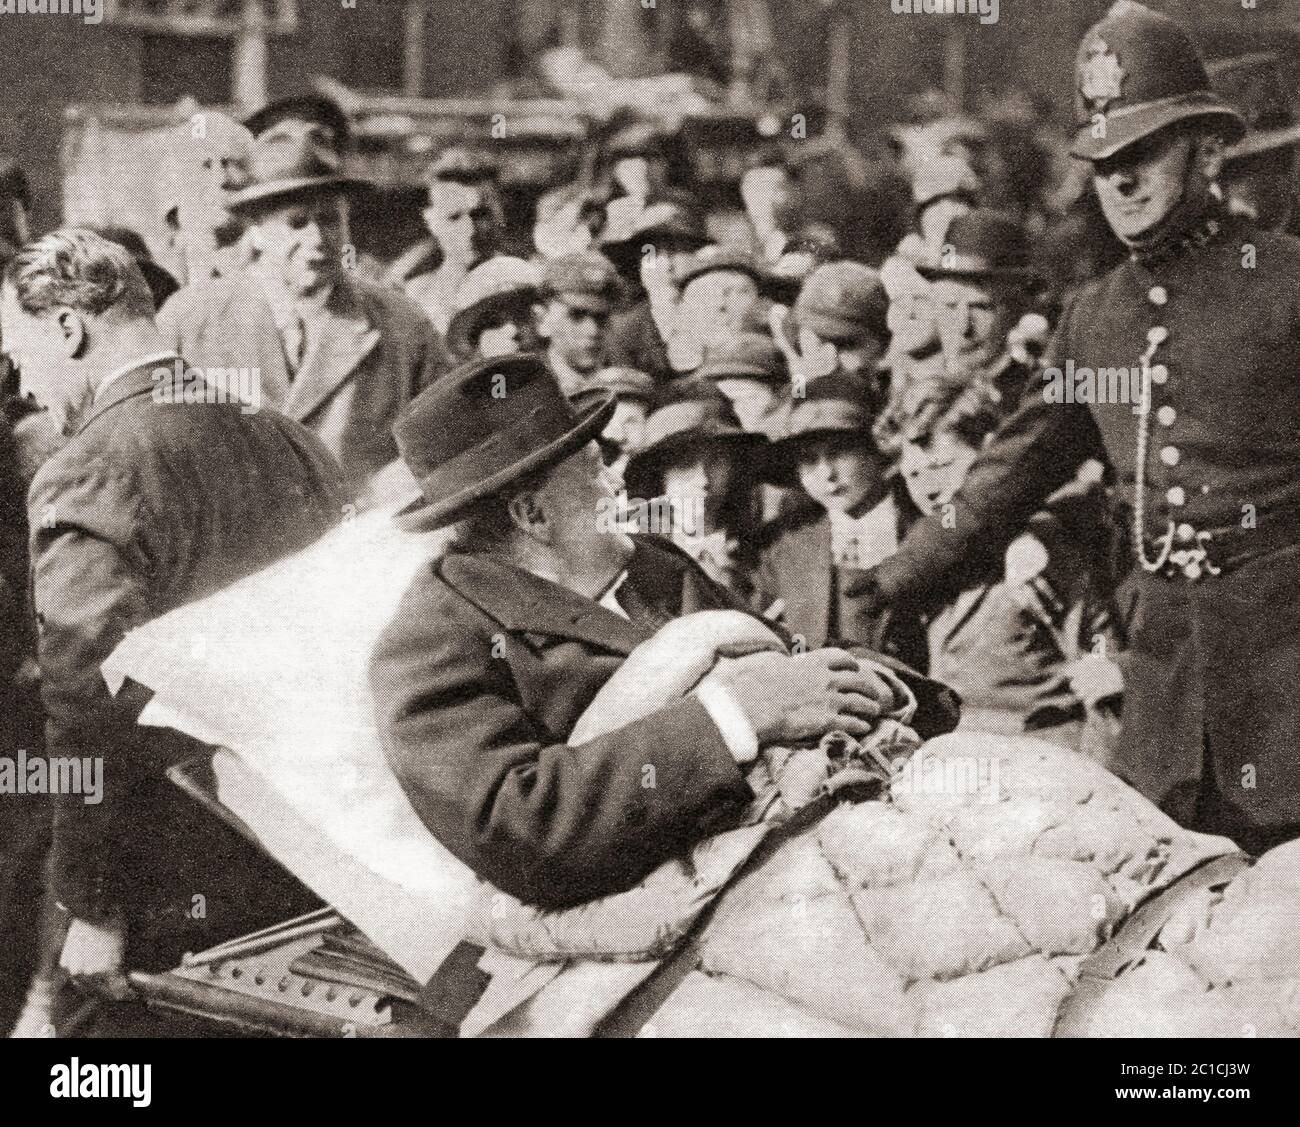 Sir Winston Churchill, vu ici en 1932, quitte la maison de retraite de la rue Beaumont, après avoir subi une attaque de paratyphoïde. Sir Winston Leonard Spencer-Churchill, 1874 – 1965. Politicien britannique, officier de l'armée, écrivain et deux fois Premier ministre du Royaume-Uni. Banque D'Images